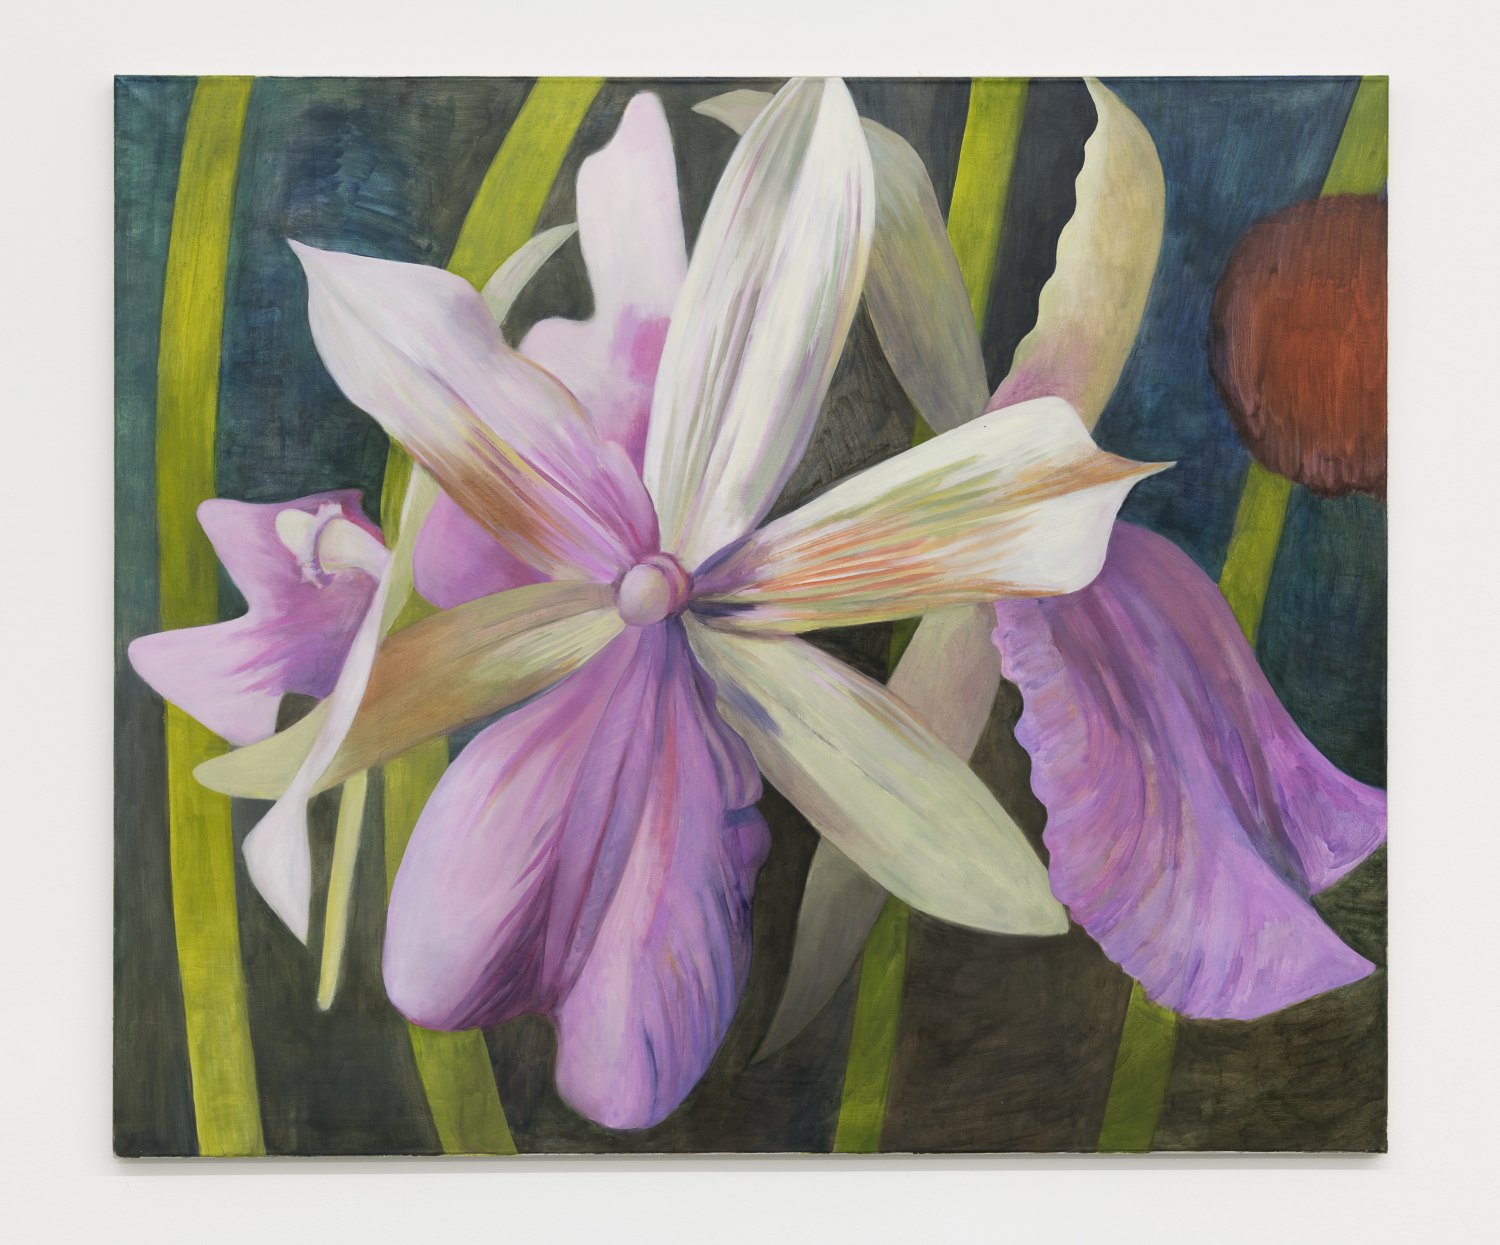 Birgit Megerle  Orchid Nr. 1, 2016 Oil on linen, 130 x 110 x 2,5 cm  